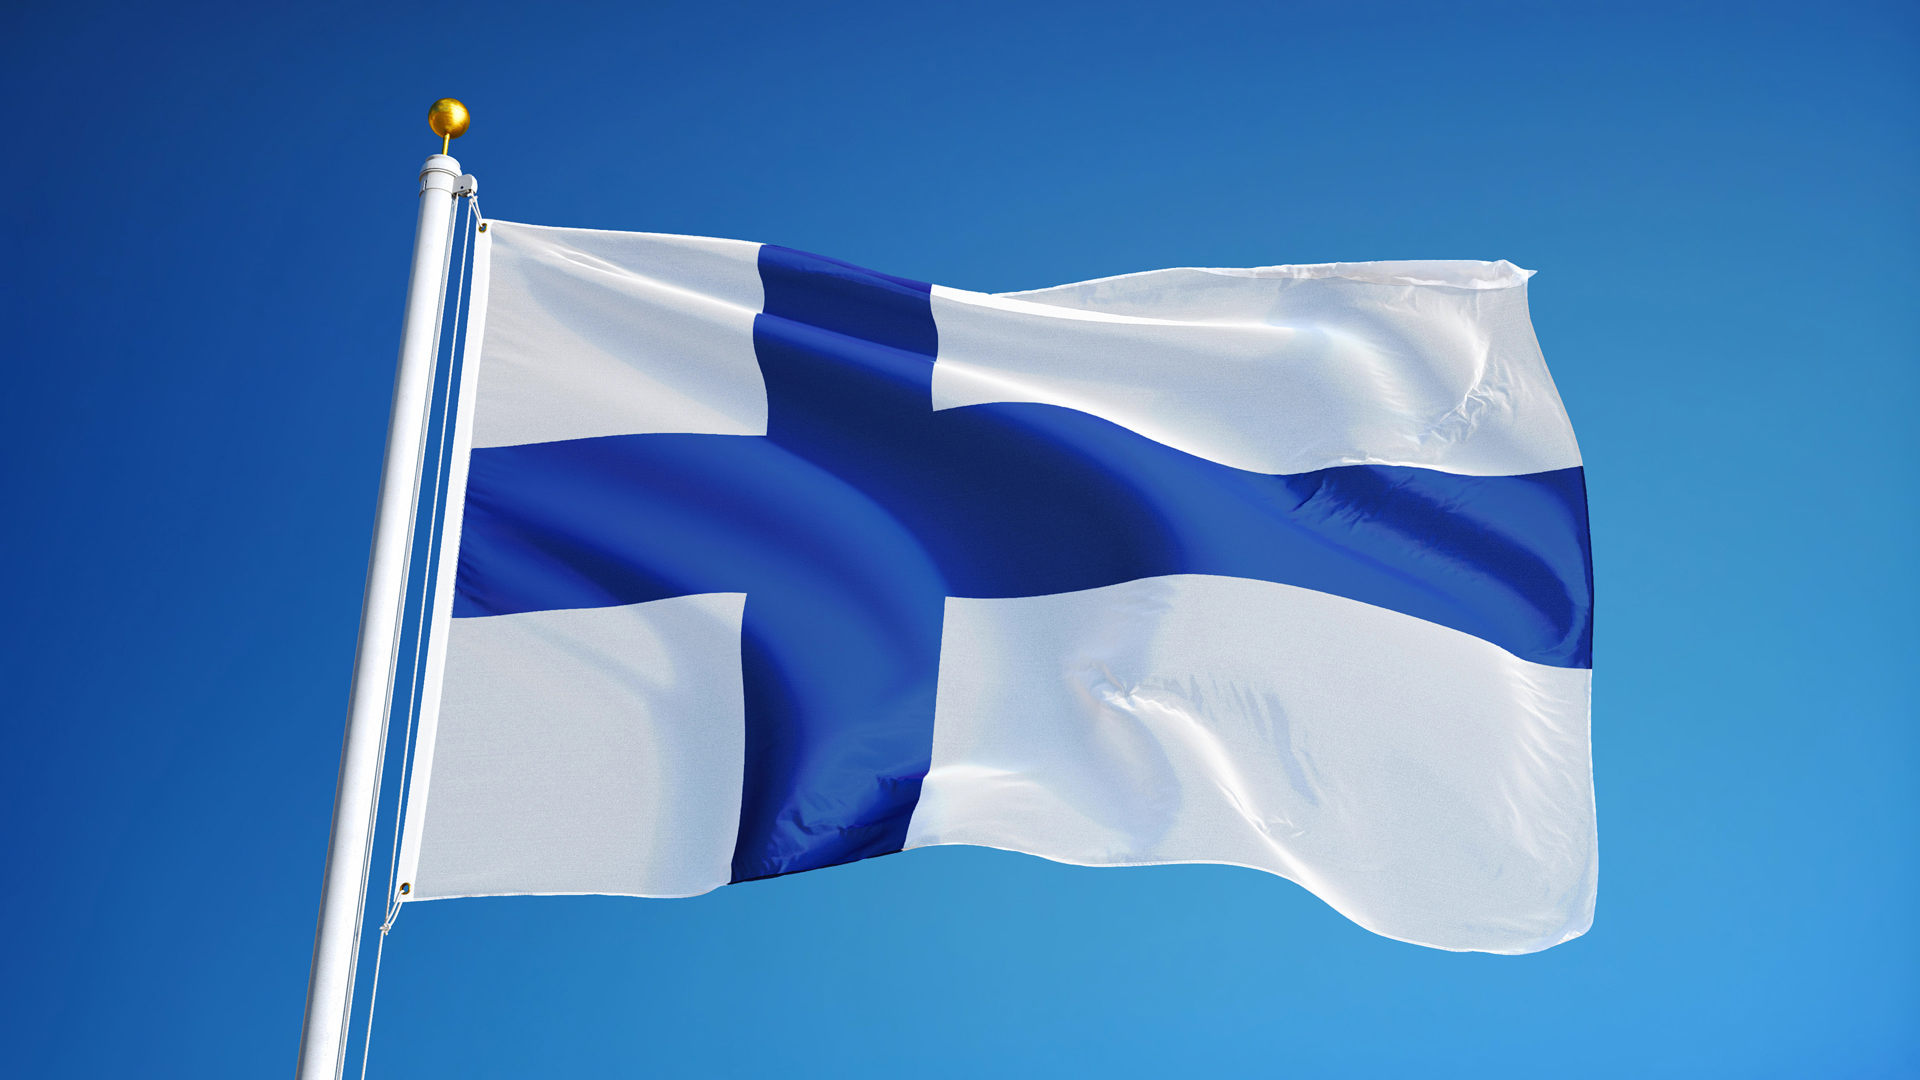 Suomen itsenäisyyspäivän juhlinta Vaasassa | Vaasan kaupunki - Vasa stad